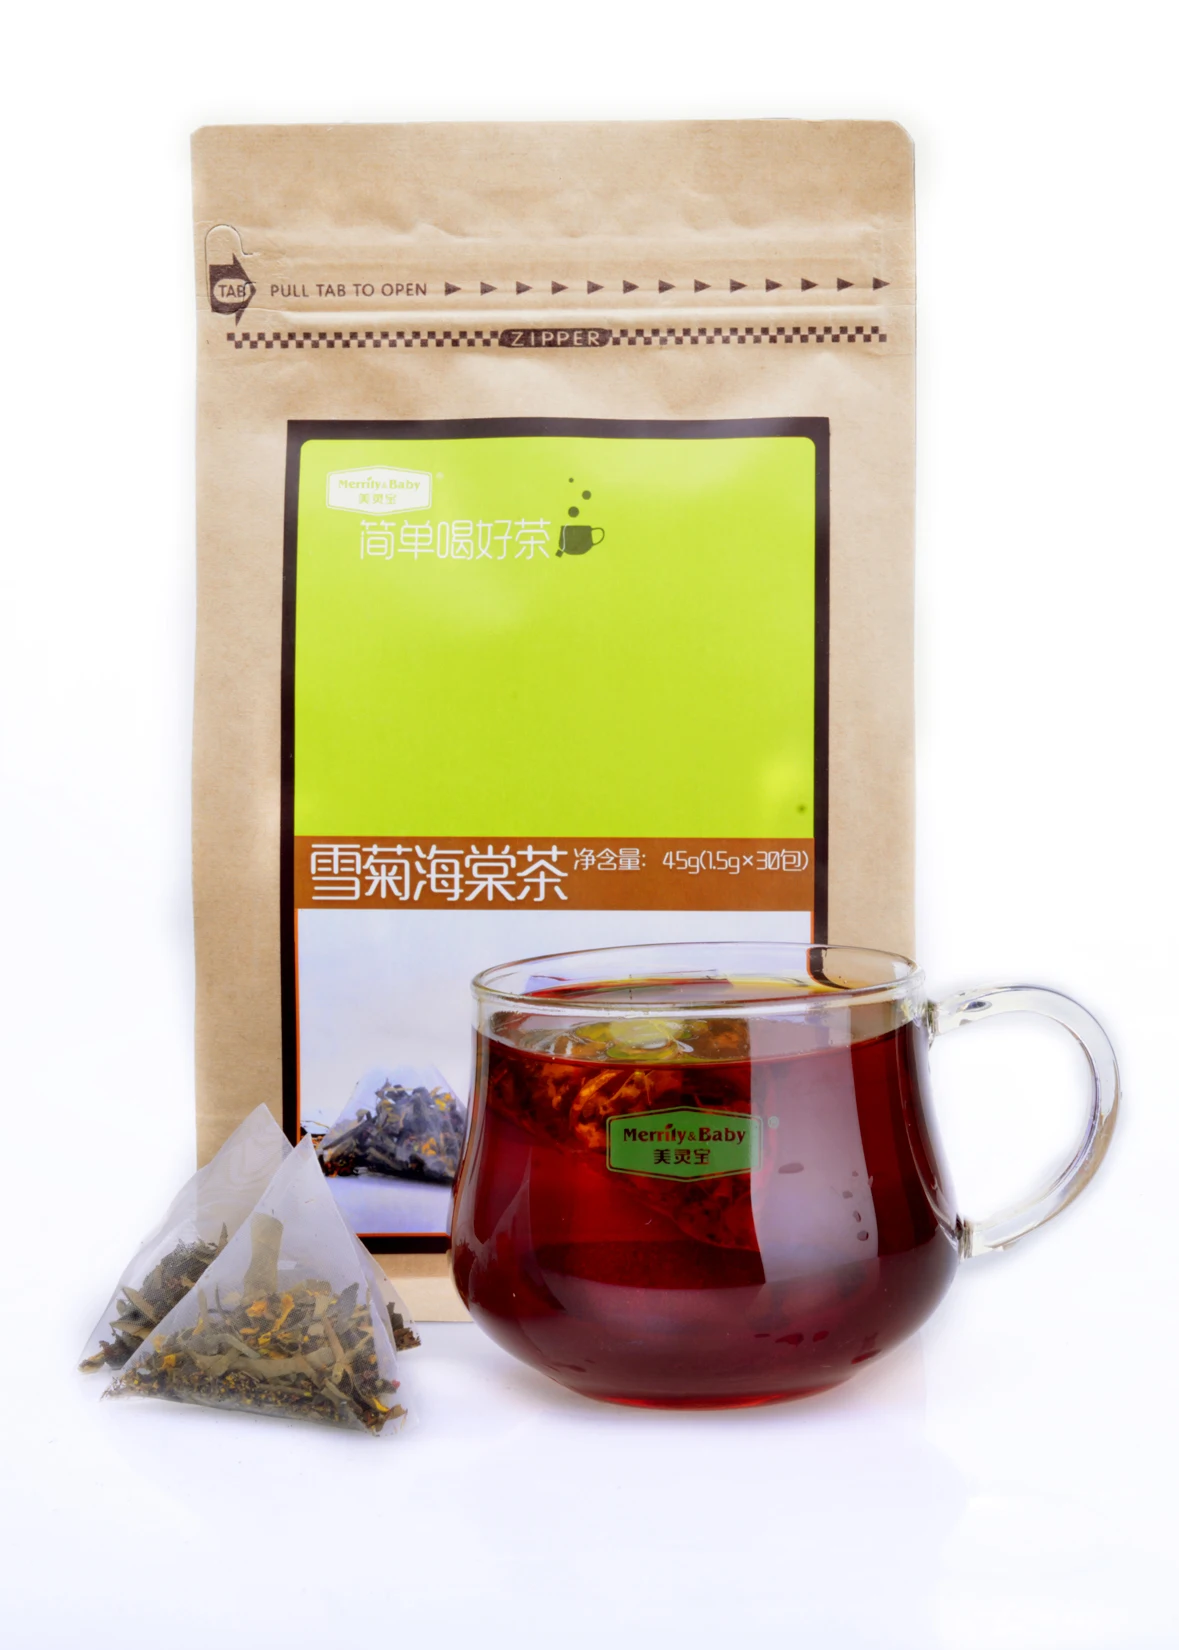 usda jasmin tea brands organic loose fujian jasmine green tea in